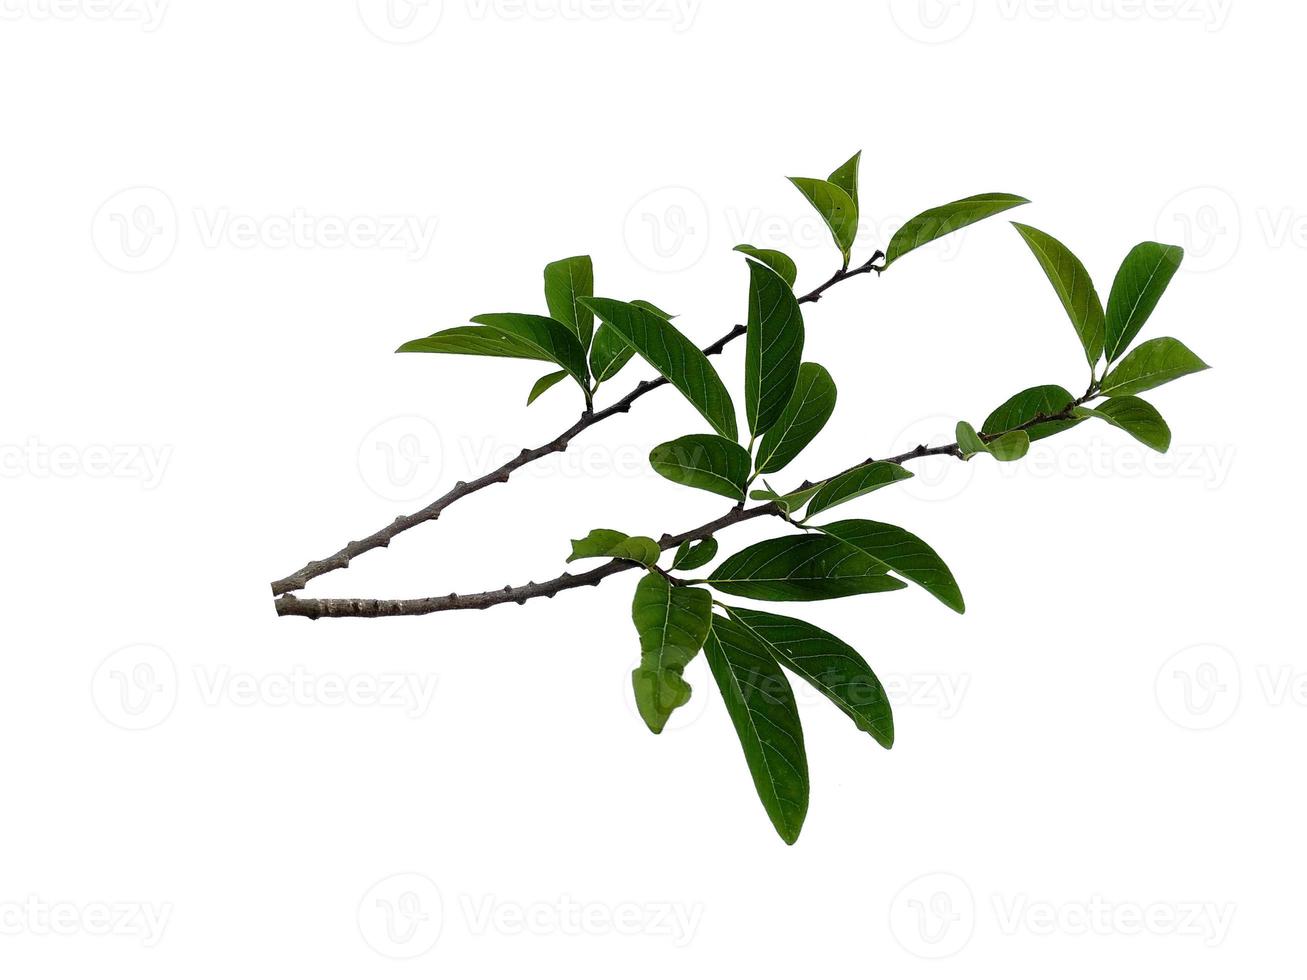 Annona squamosa or Sugar apple leaf on white background photo